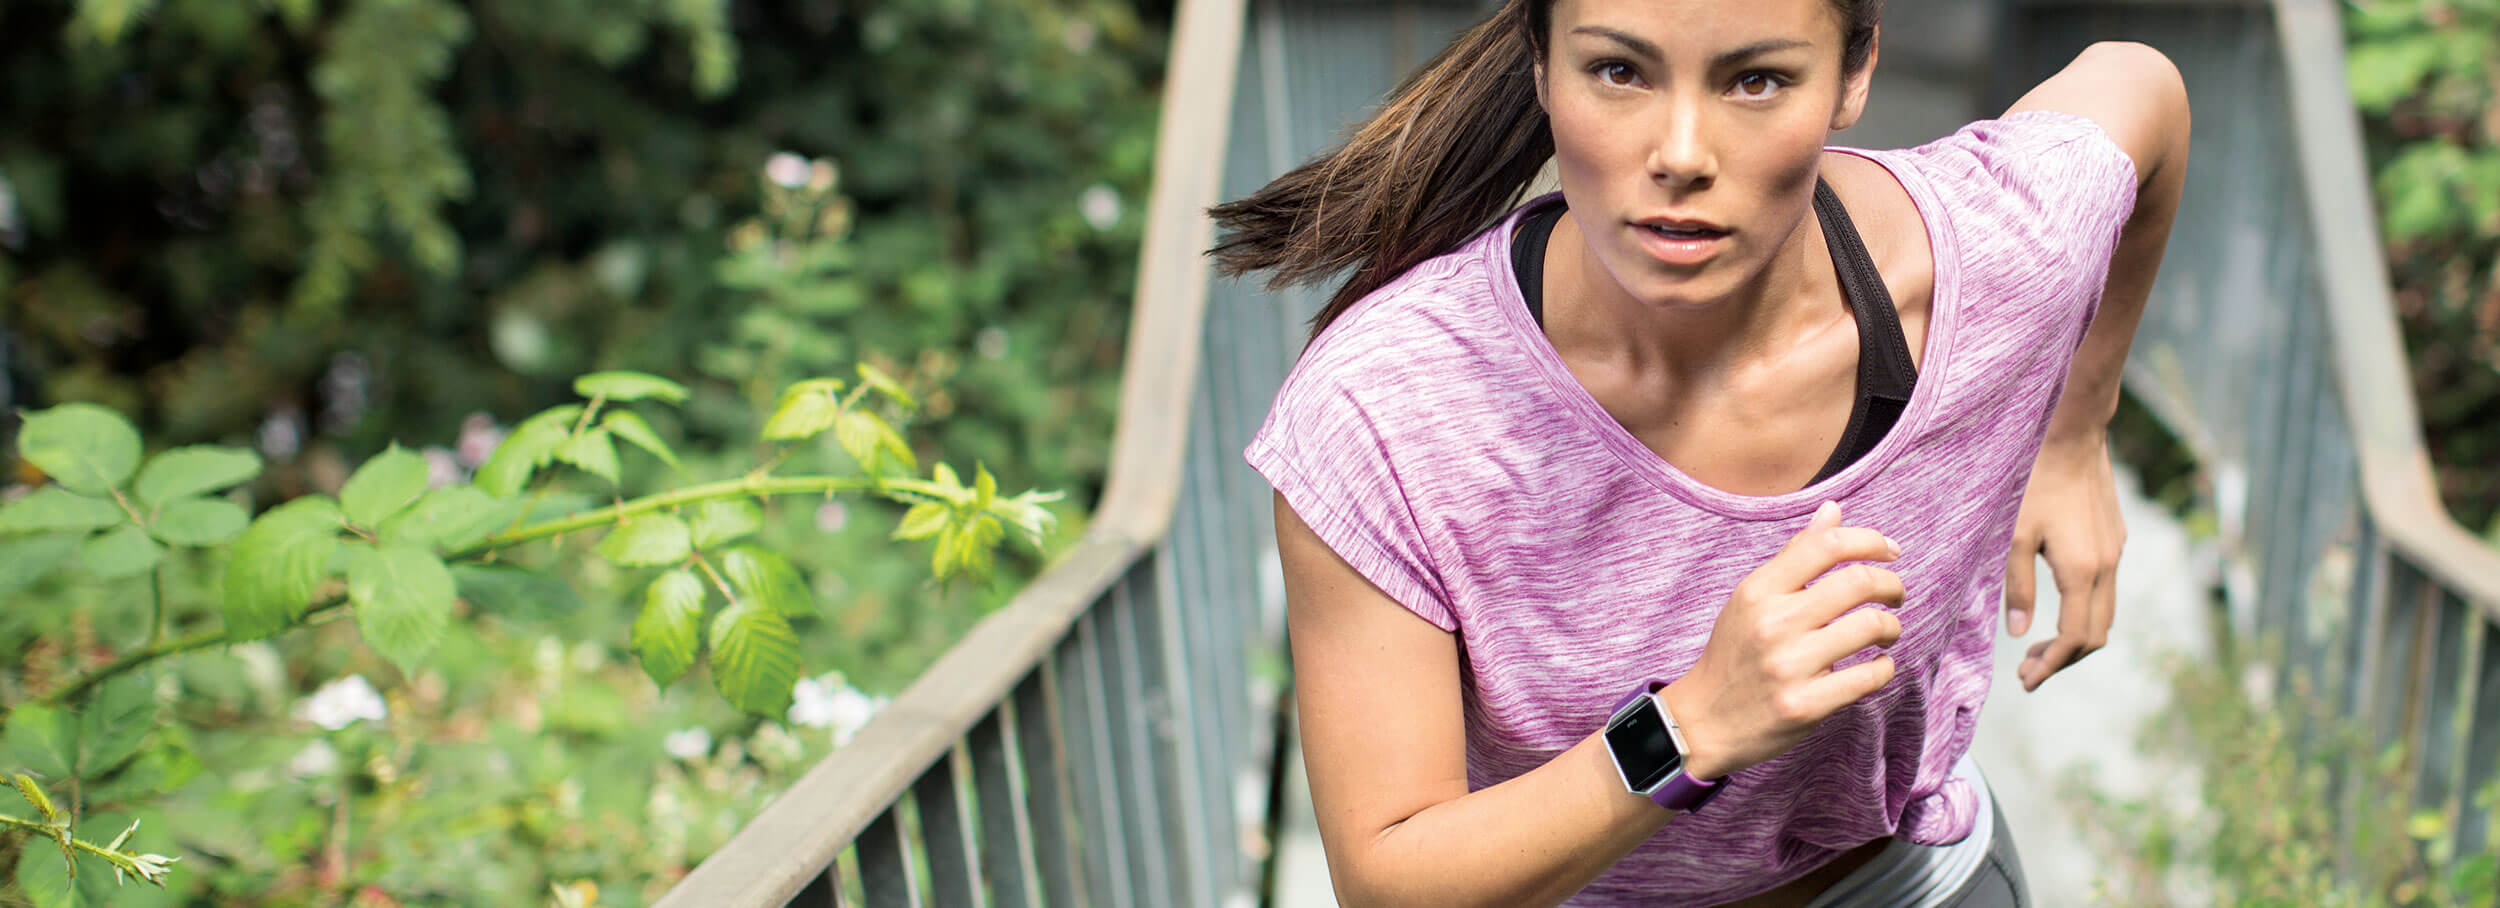 Fitness náramek pro sledování aktivit, notifikací a tepu Fitbit Blaze